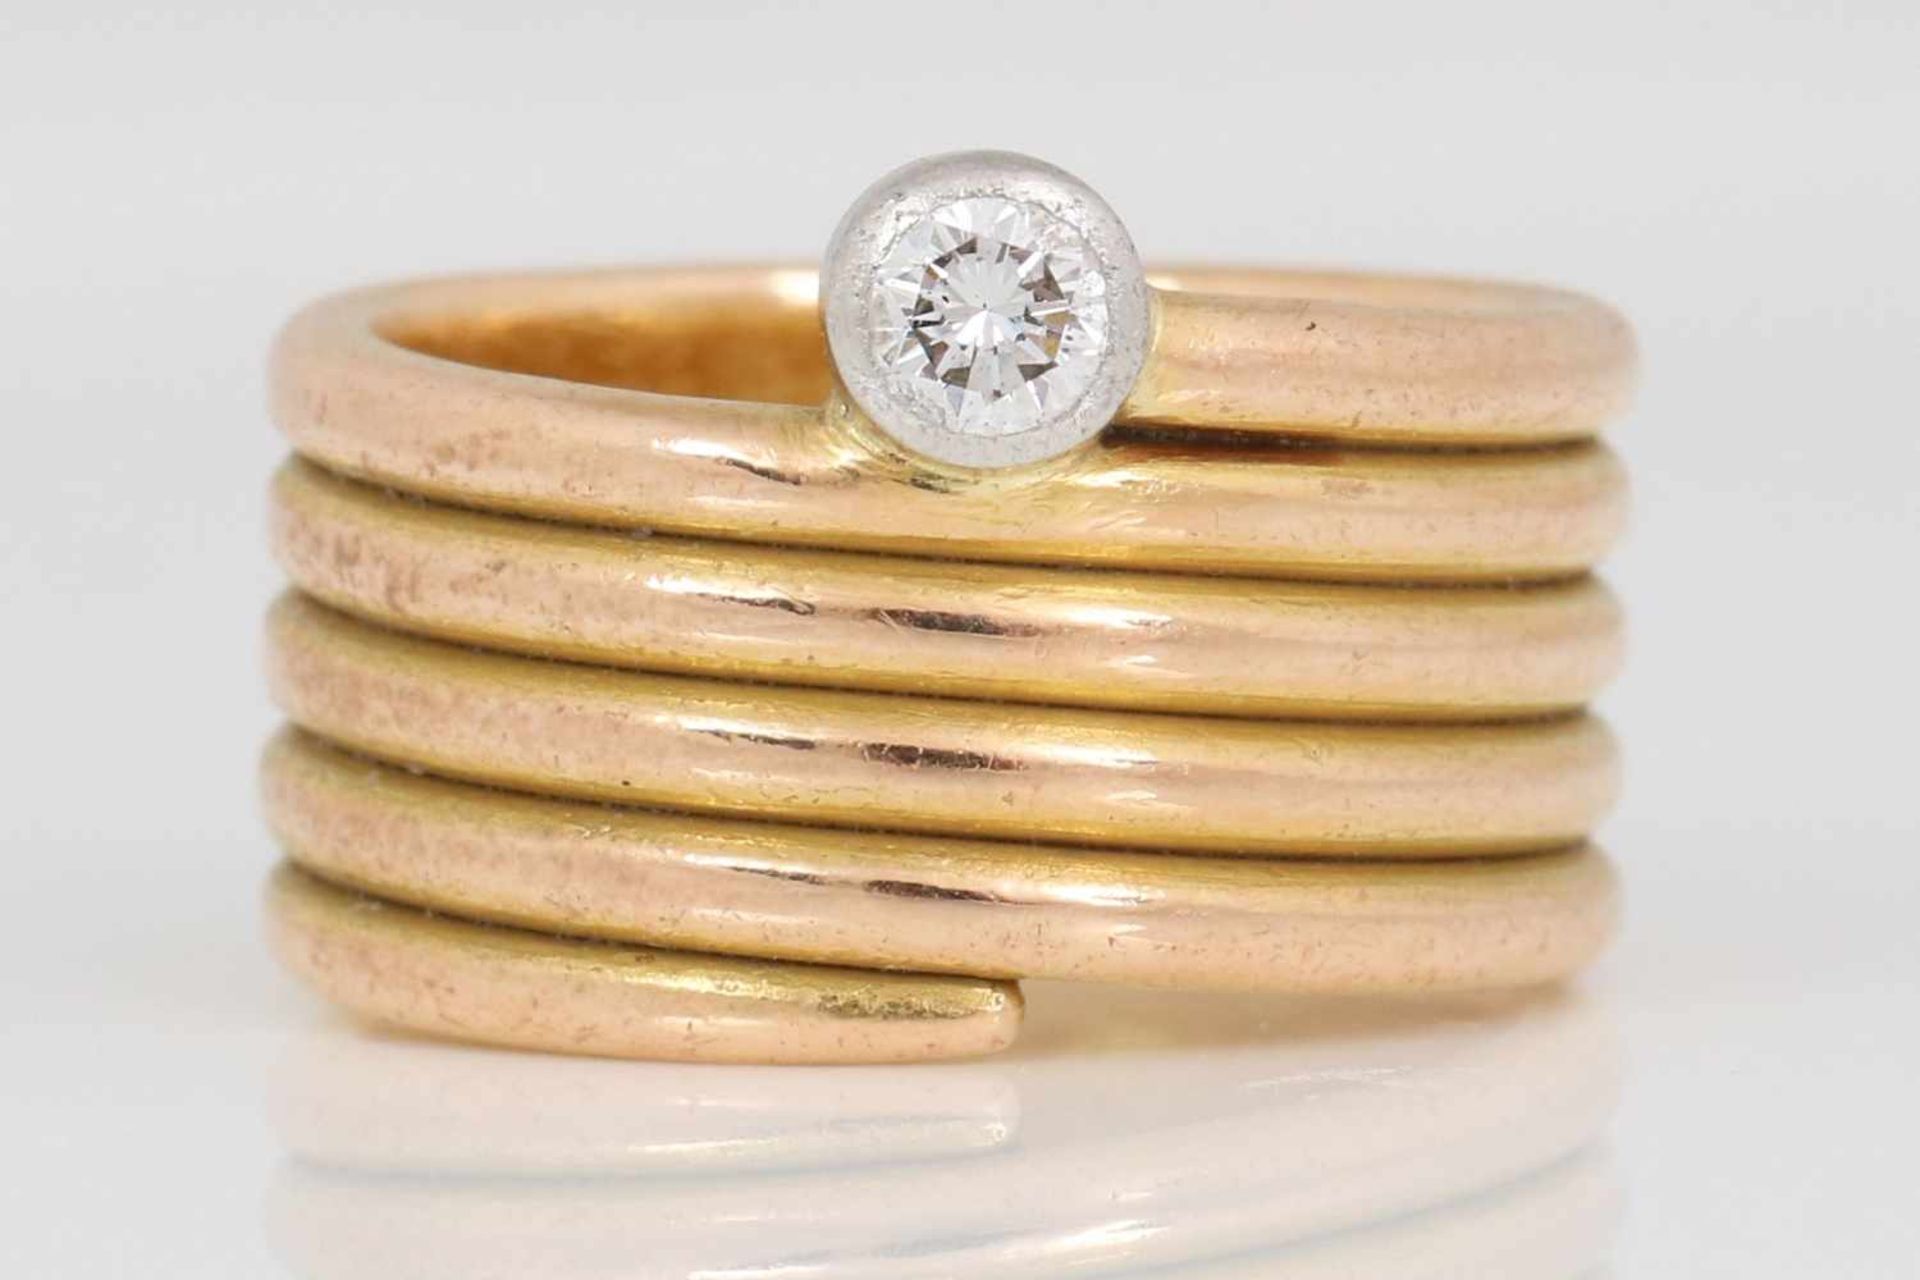 Goldring mit DiamantRoségold, spiralförmige, breite Schiene, 1 Brillant, ca. 0,15ct., vsi, Gewicht